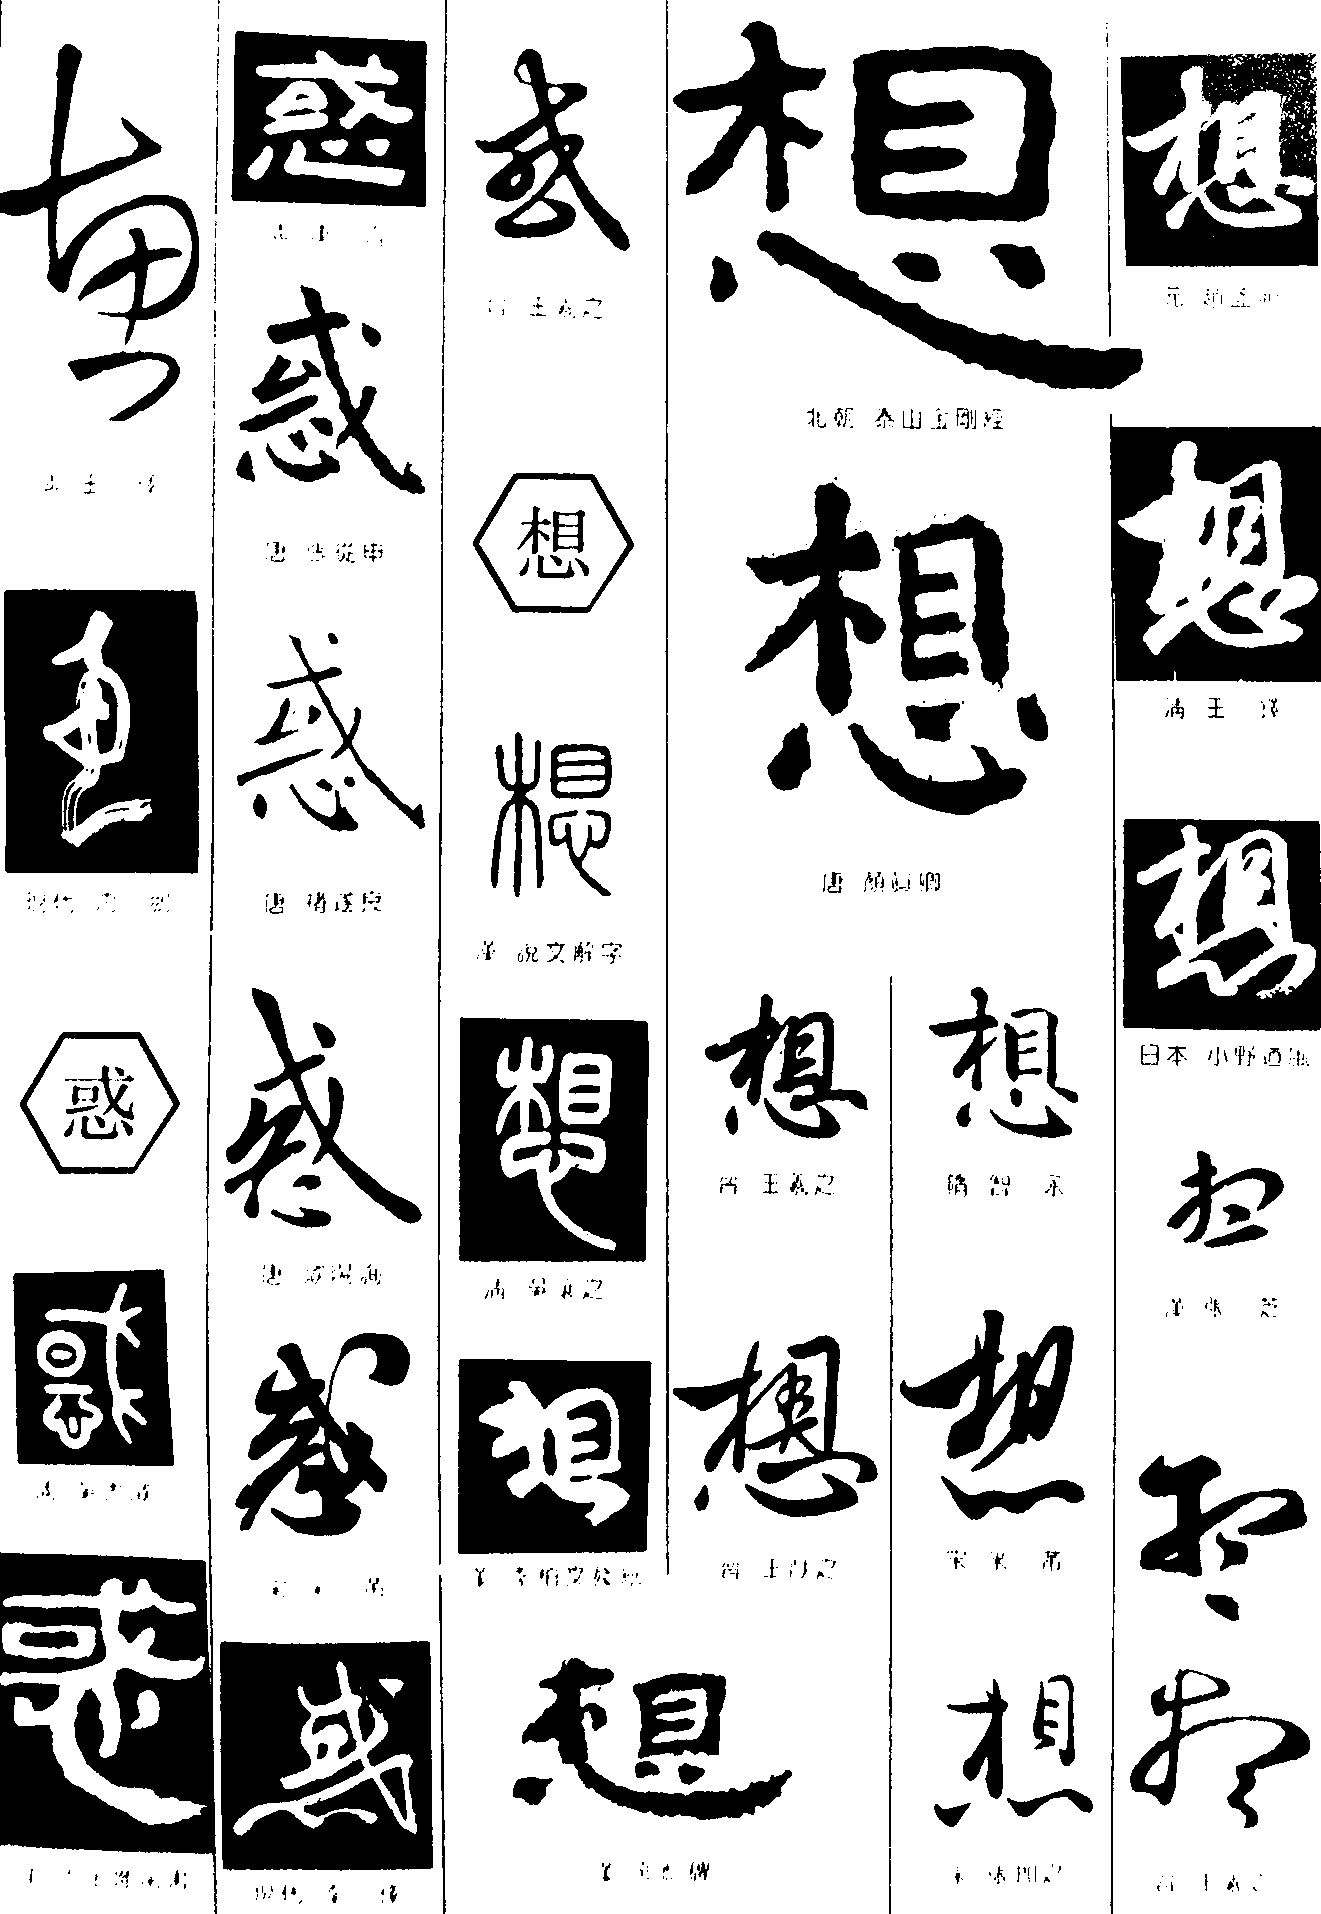 不_书法字体_字体设计作品-中国字体设计网_ziti.cndesign.com